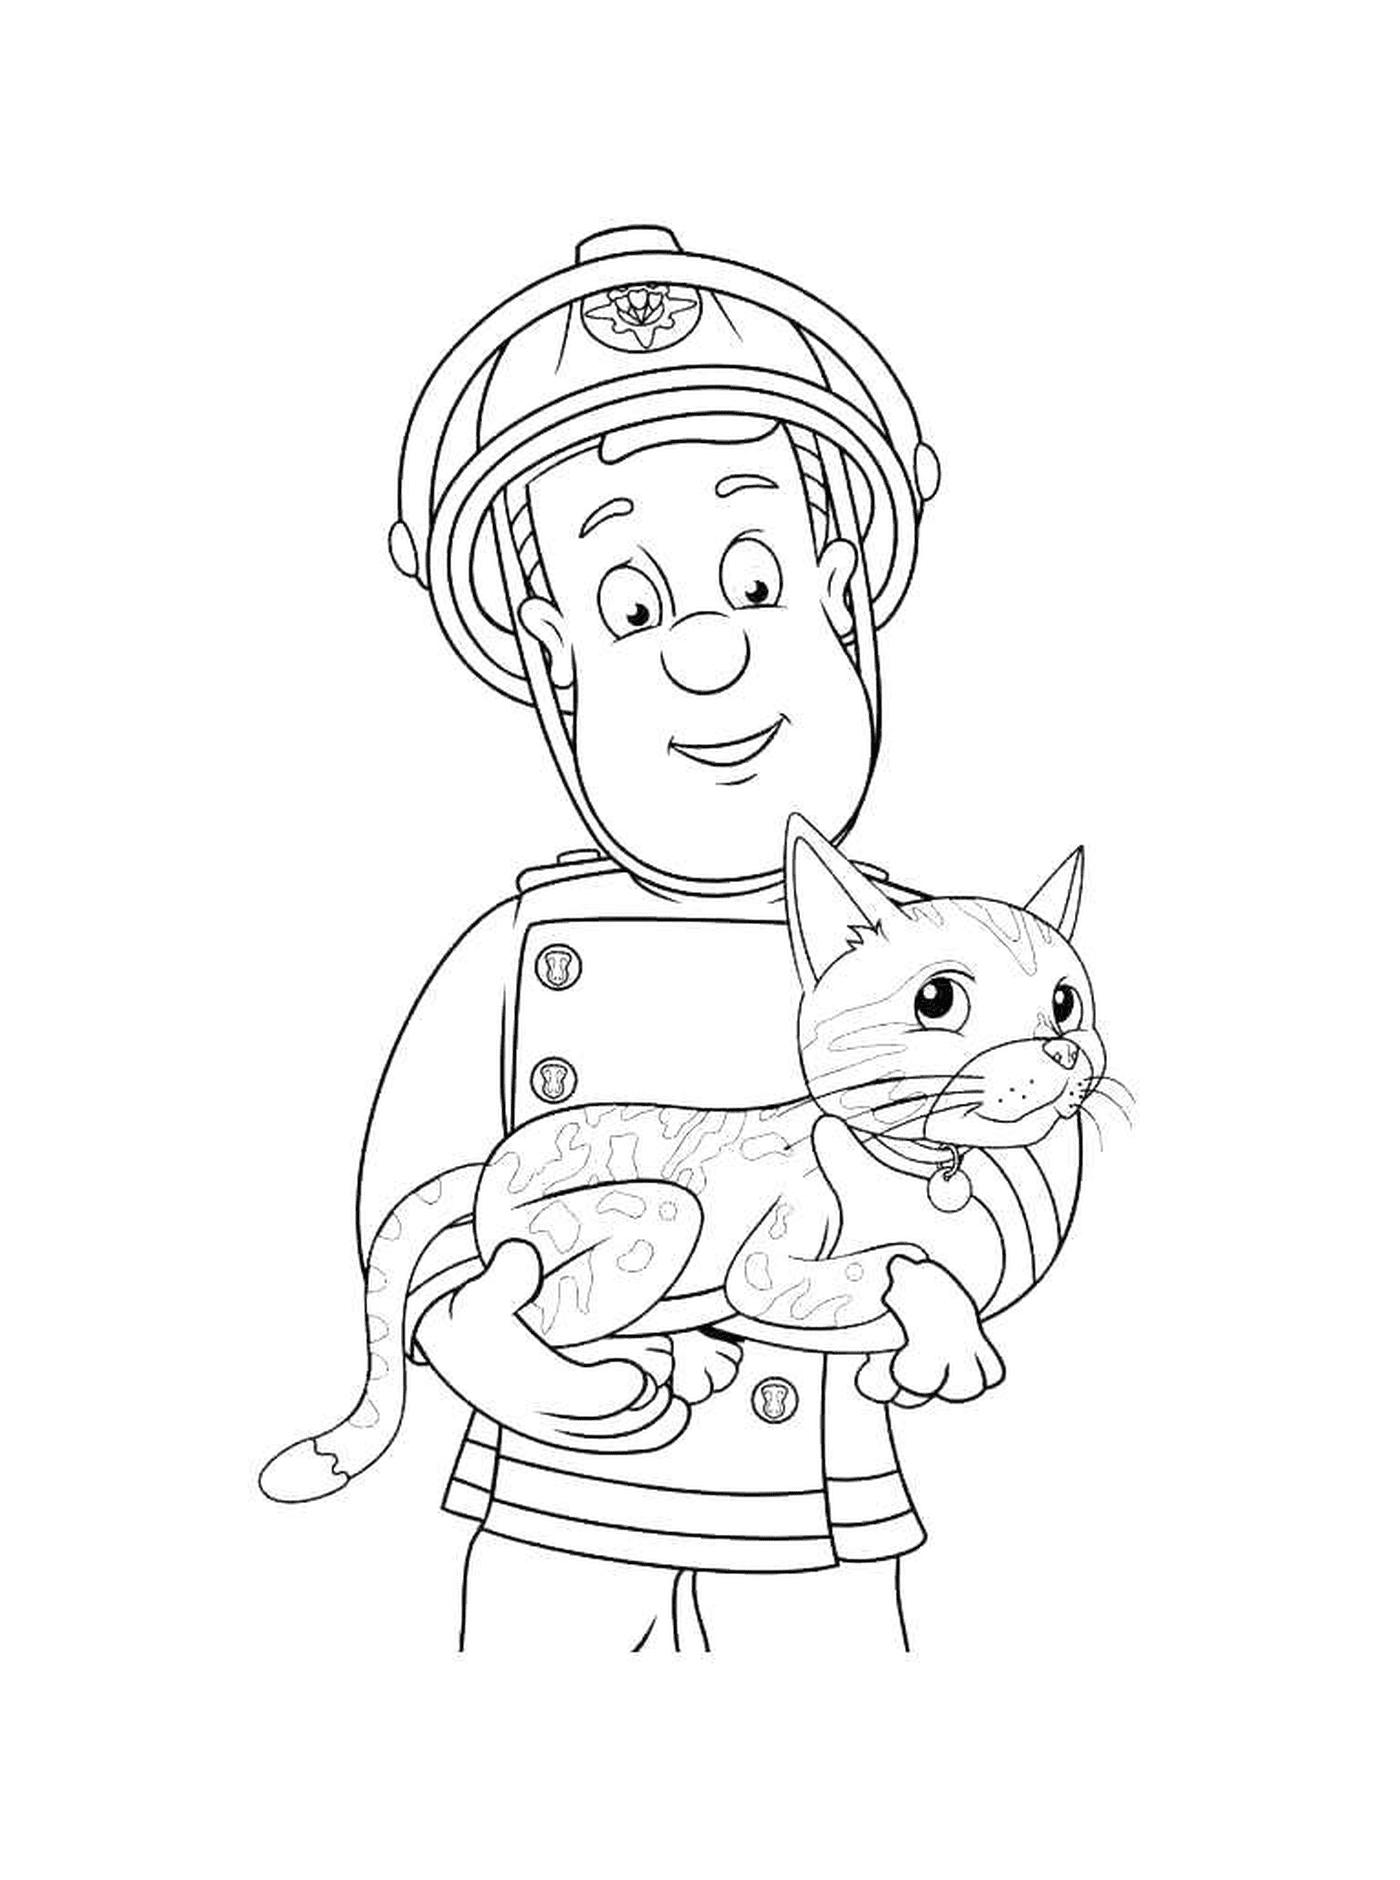  Feuerwehrmann, der eine Katze hält 